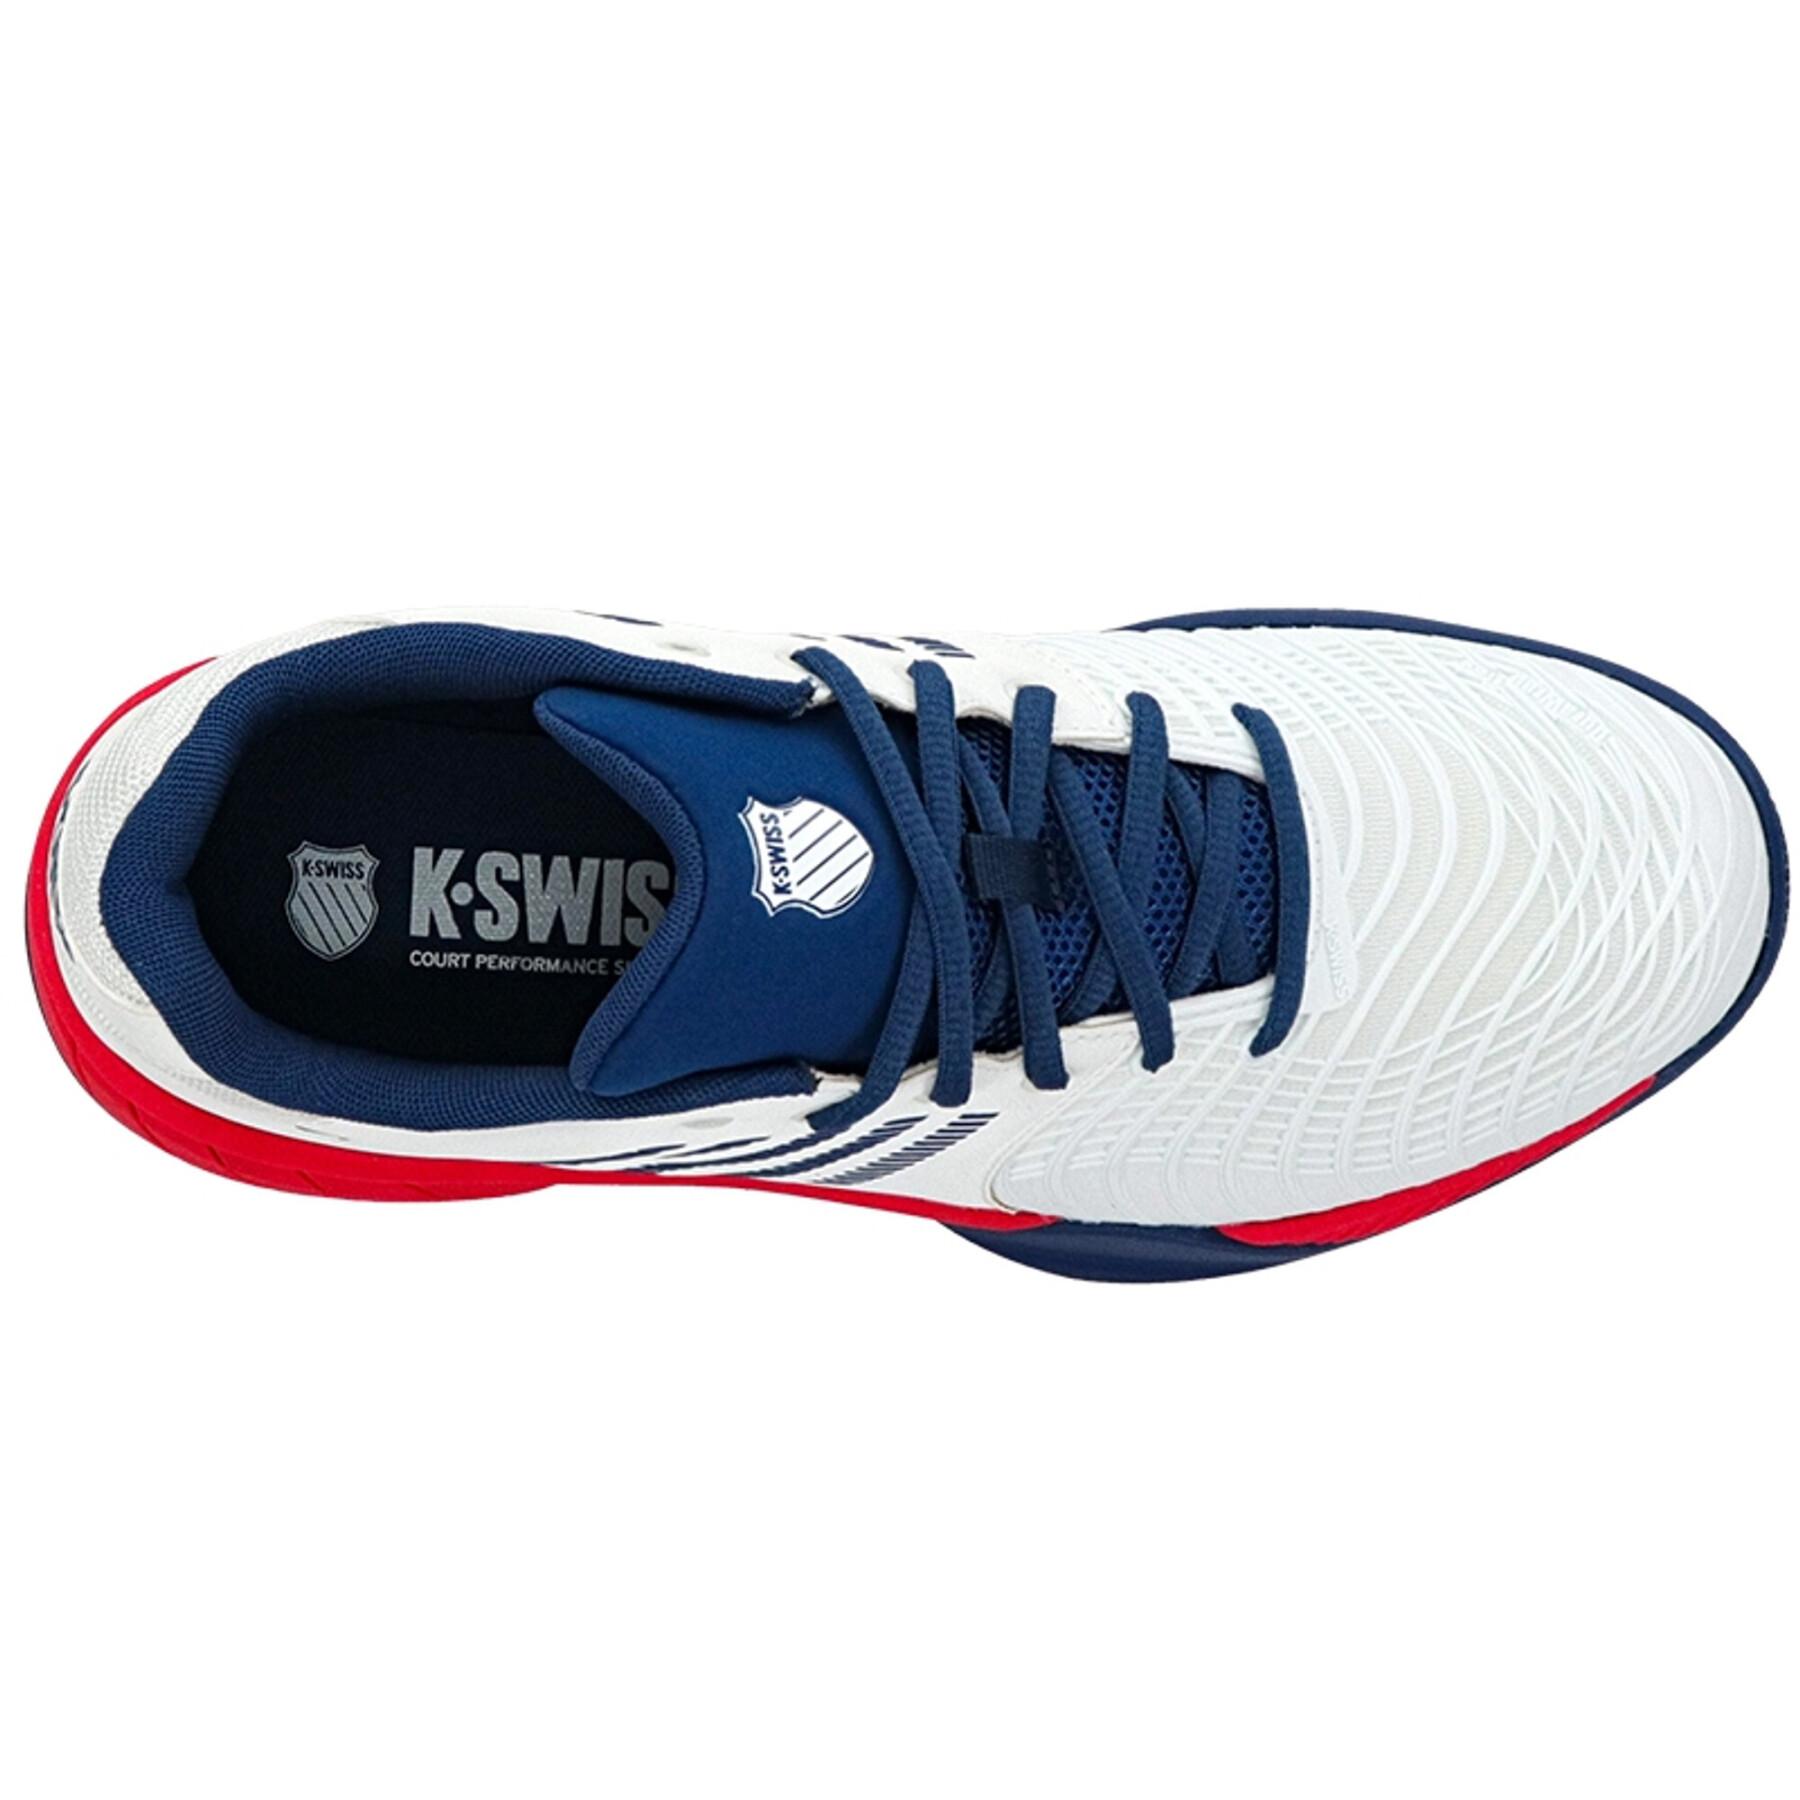 Tennis shoes K-Swiss Express Light 3